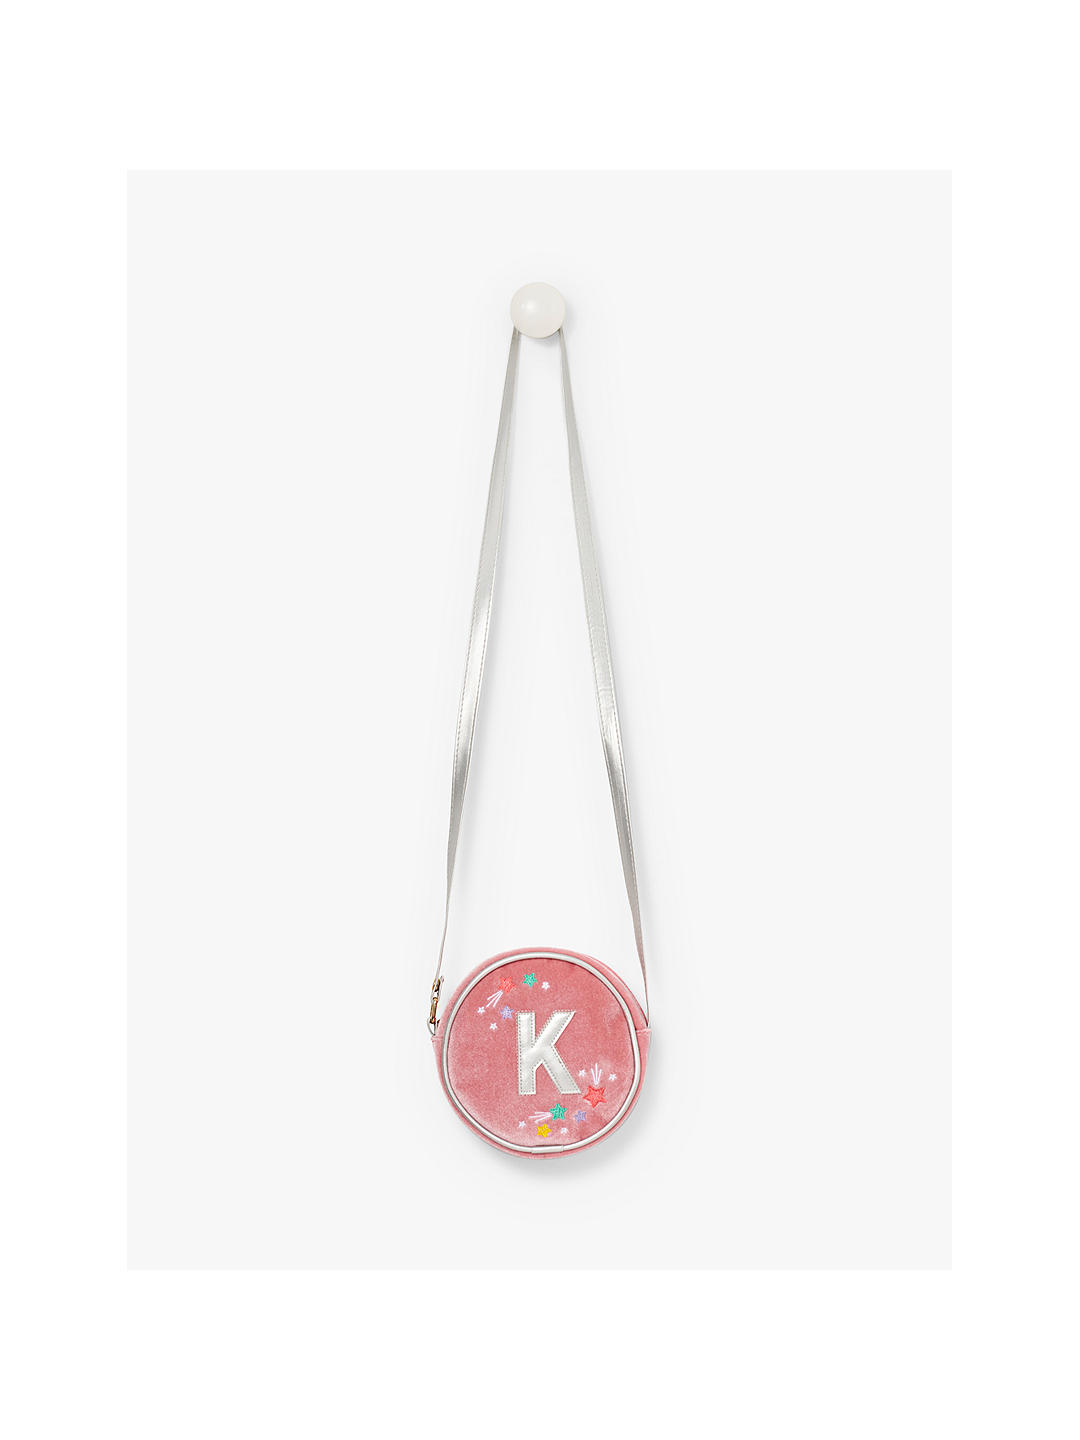 Small Stuff Kids' Initial Bag, Pink, K